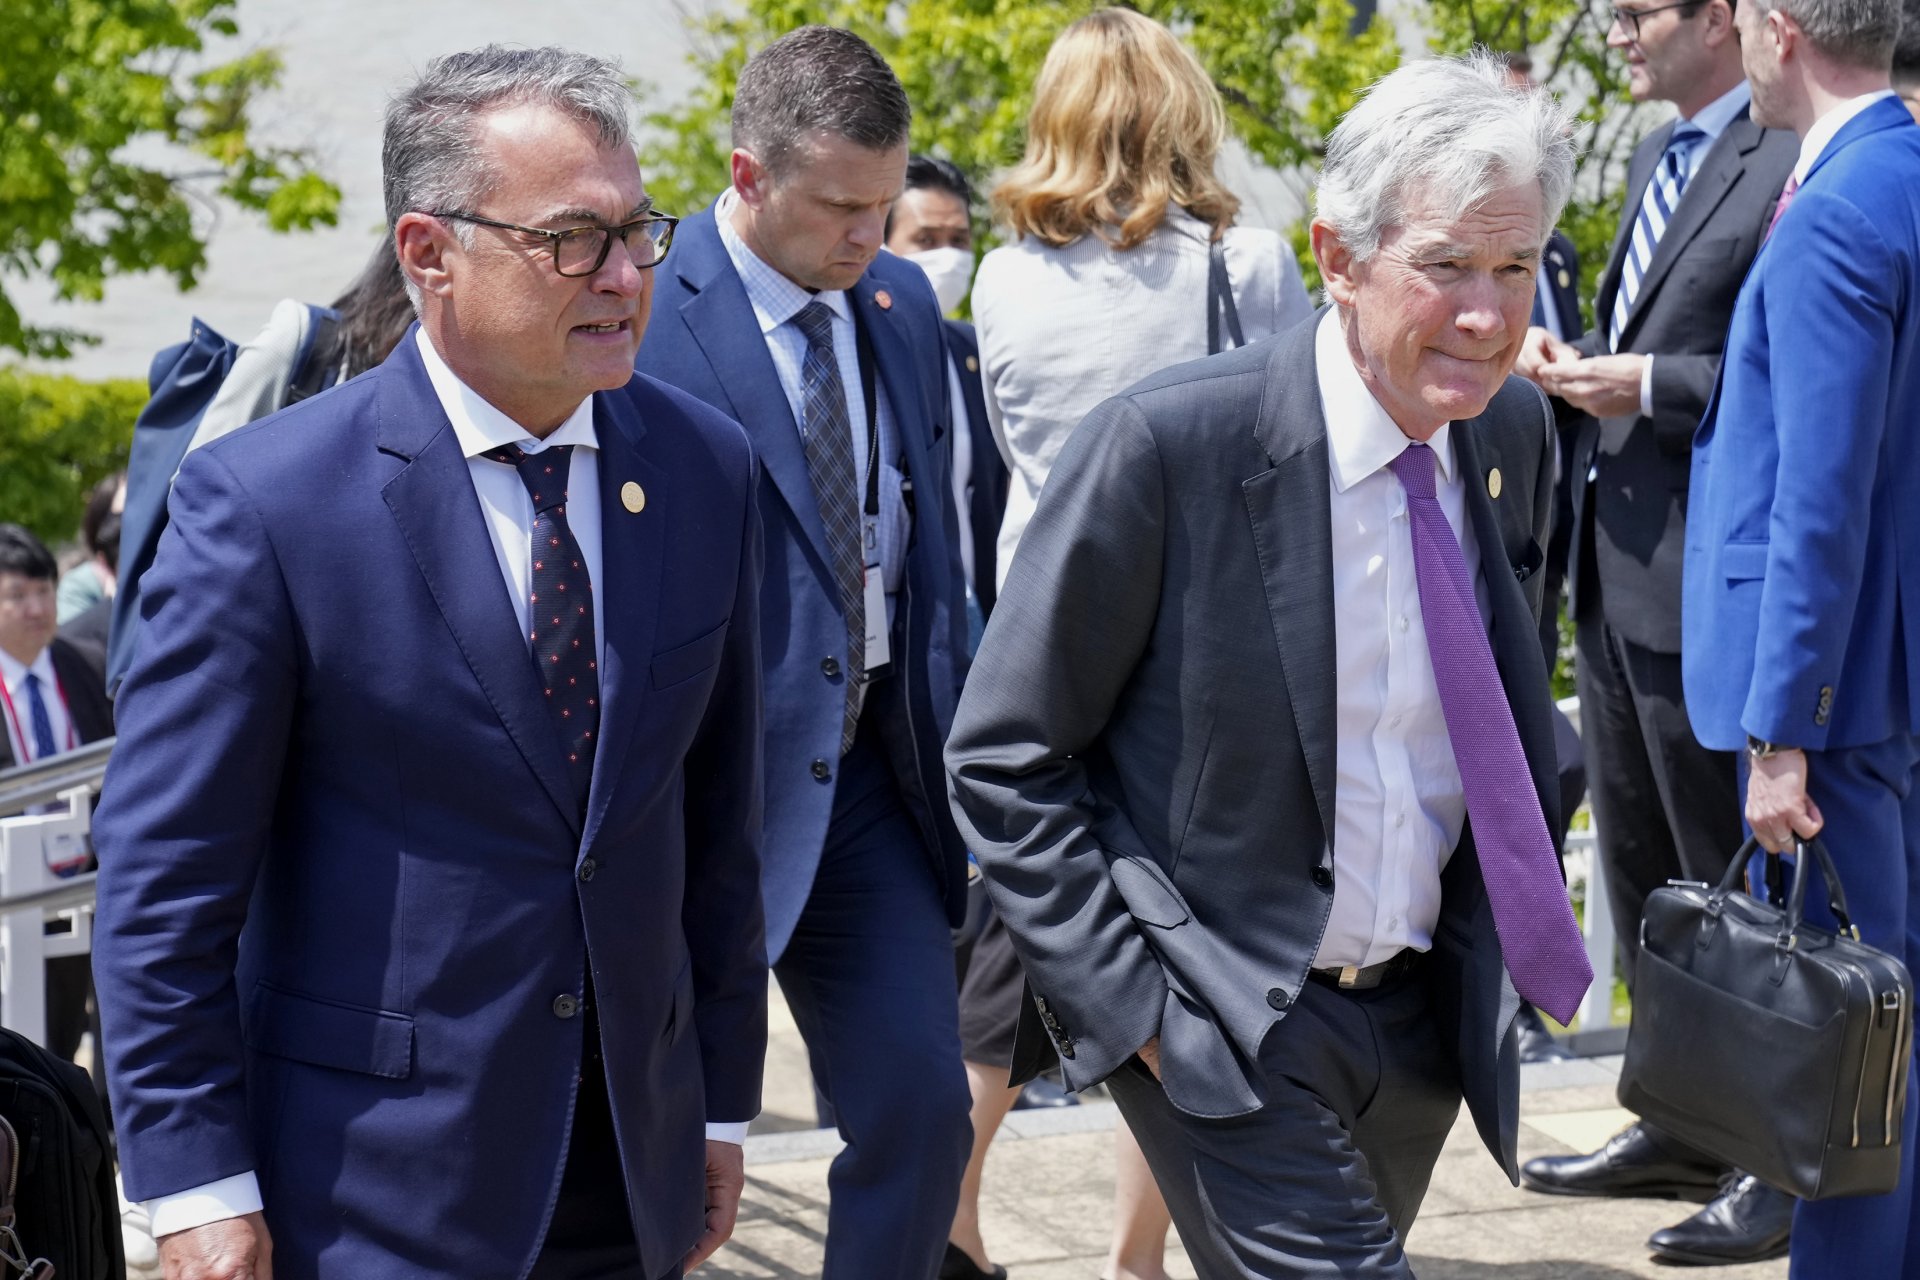 Управителят на германската централна банка Бундесбанк (Bundesbank) Йоахим Нагел (вляво) и президентът на Федералния резерв на САЩ Джером Пауъл по време на срещата на финансовите министри на Г-7 през месец май